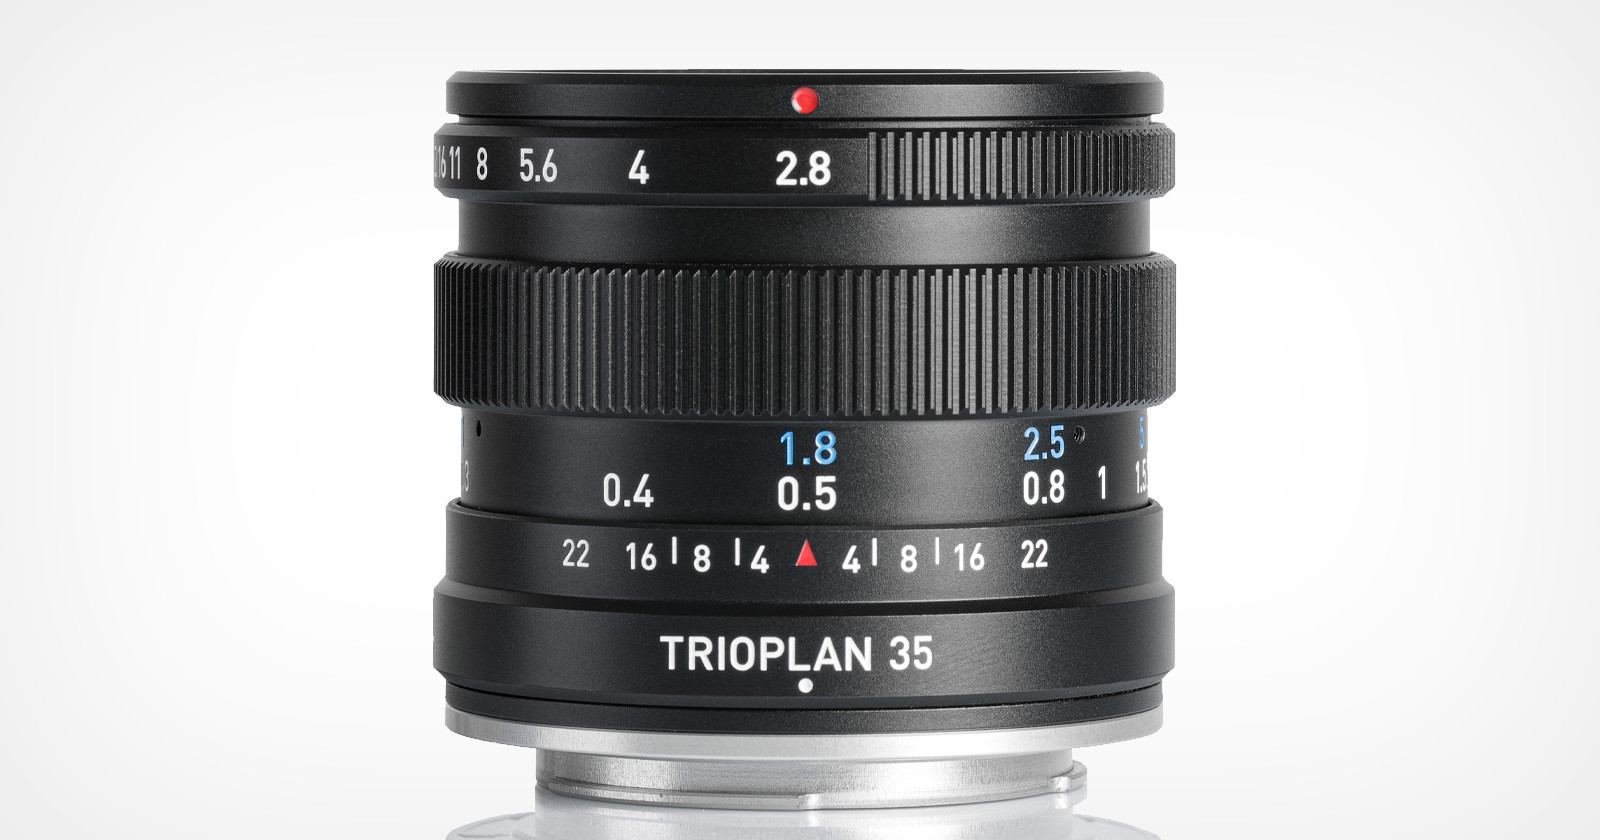 Meyer Optik Görlitz Launches Trioplan 35mm f/2.8 II for 11 Camera Mounts